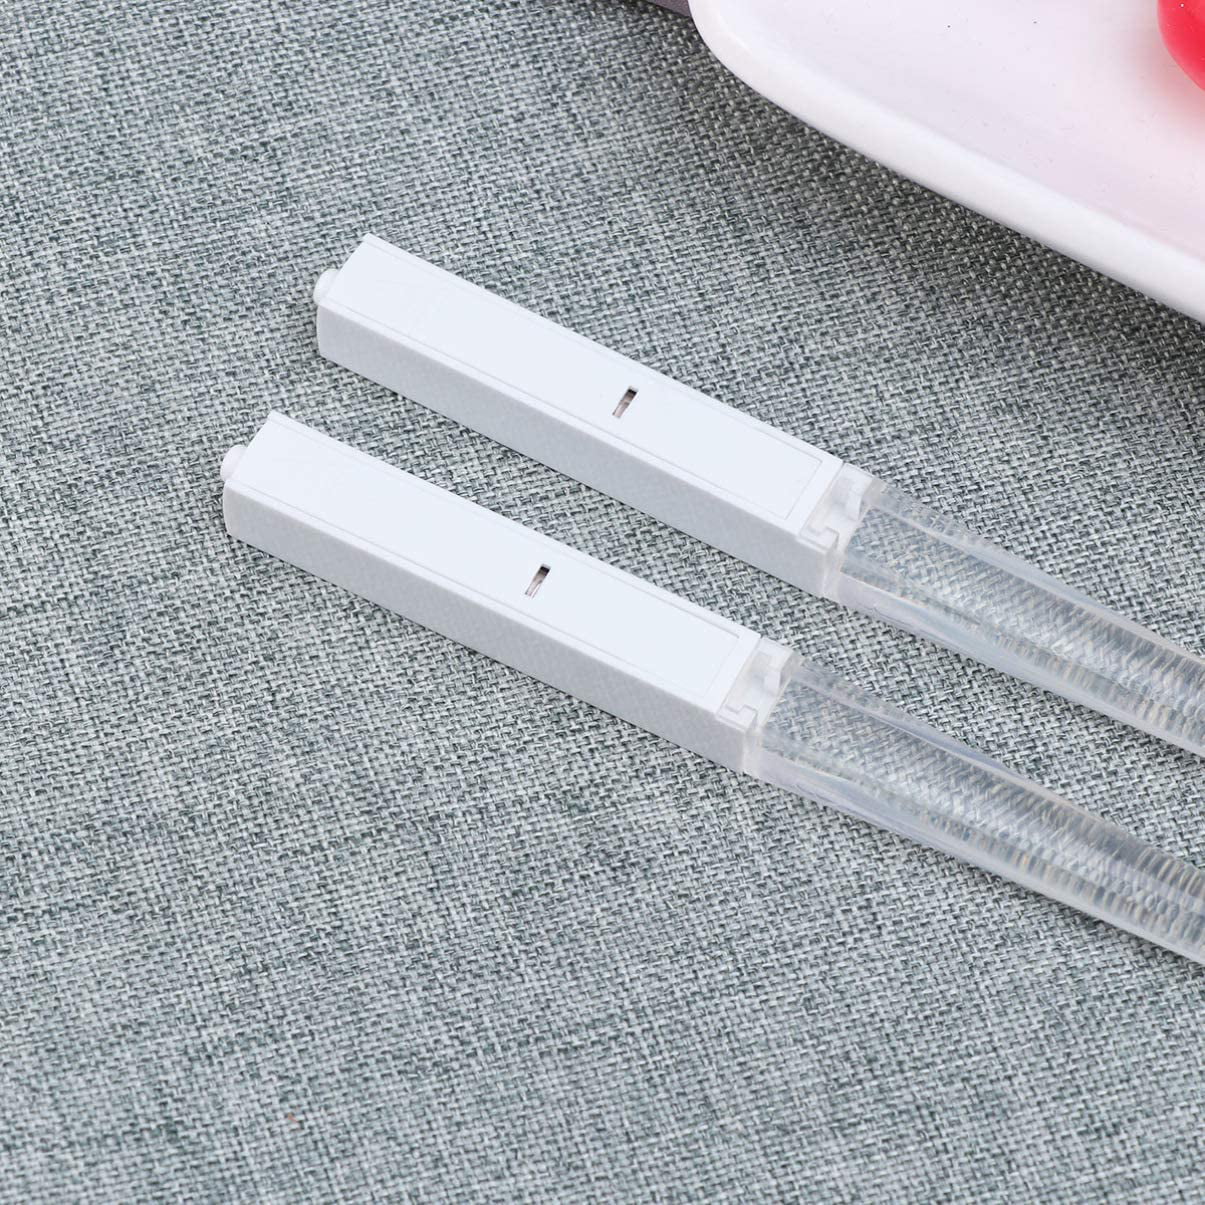 Ireav 1 Pair LED Chopsticks Light Up Chopsticks Lightsaber Durable Lightweight Portable Tableware Reusable Blue